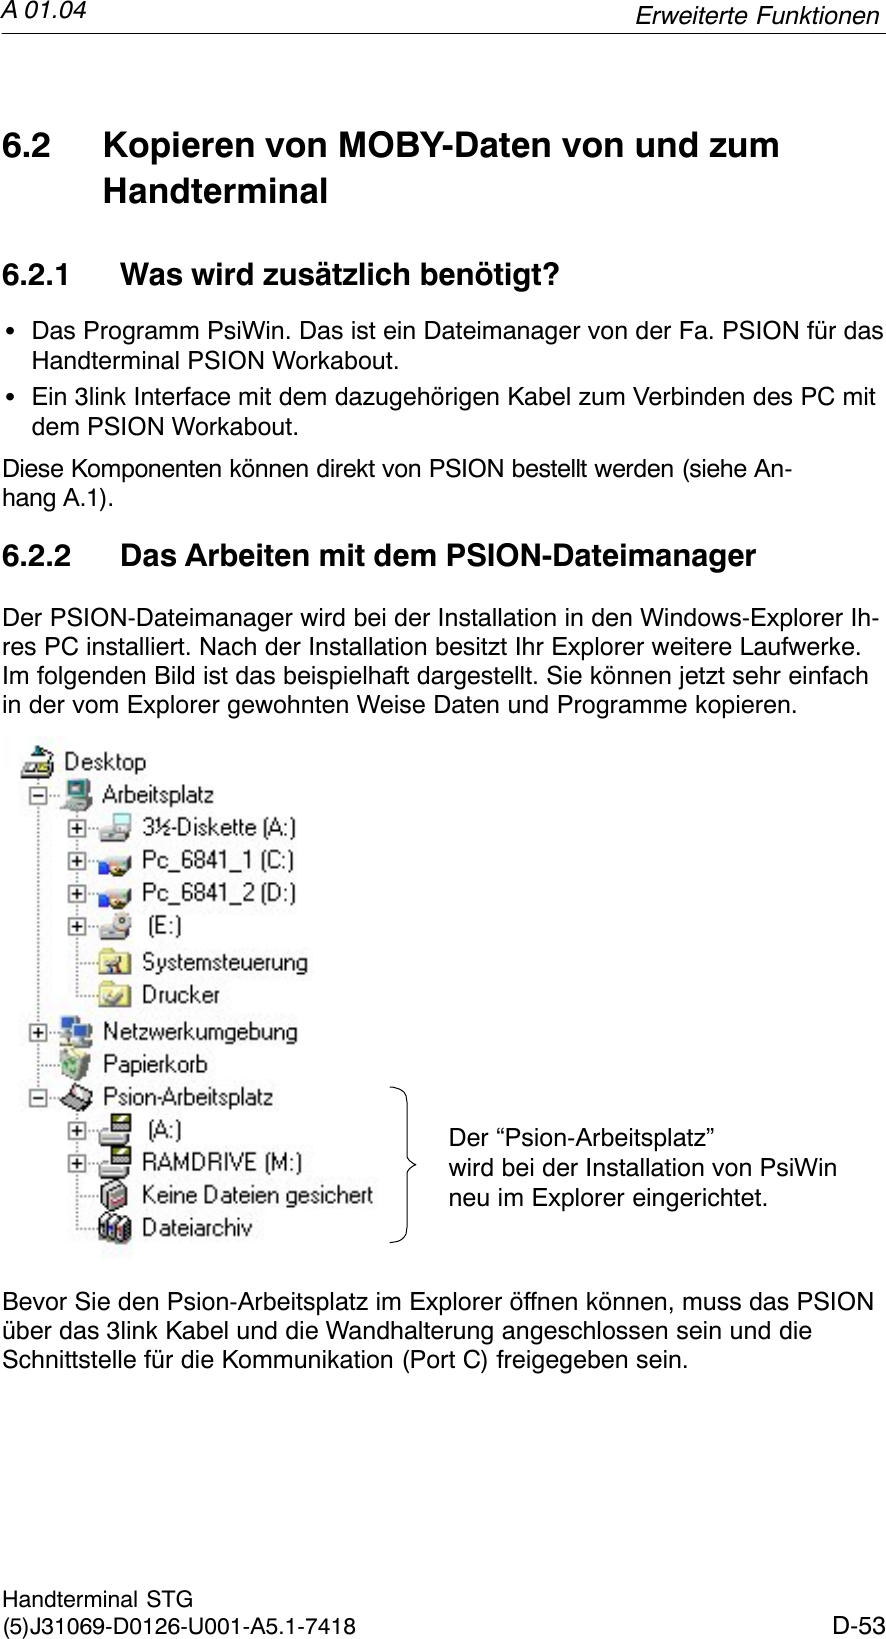 A 01.04D-53Handterminal STG(5)J31069-D0126-U001-A5.1-74186.2 Kopieren von MOBY-Daten von und zumHandterminal6.2.1 Was wird zusätzlich benötigt?SDas Programm PsiWin. Das ist ein Dateimanager von der Fa. PSION für dasHandterminal PSION Workabout.SEin 3link Interface mit dem dazugehörigen Kabel zum Verbinden des PC mitdem PSION Workabout.Diese Komponenten können direkt von PSION bestellt werden (siehe An-hang A.1).6.2.2 Das Arbeiten mit dem PSION-DateimanagerDer PSION-Dateimanager wird bei der Installation in den Windows-Explorer Ih-res PC installiert. Nach der Installation besitzt Ihr Explorer weitere Laufwerke.Im folgenden Bild ist das beispielhaft dargestellt. Sie können jetzt sehr einfachin der vom Explorer gewohnten Weise Daten und Programme kopieren.Der “Psion-Arbeitsplatz” wird bei der Installation von PsiWinneu im Explorer eingerichtet.Bevor Sie den Psion-Arbeitsplatz im Explorer öffnen können, muss das PSIONüber das 3link Kabel und die Wandhalterung angeschlossen sein und dieSchnittstelle für die Kommunikation (Port C) freigegeben sein.Erweiterte Funktionen